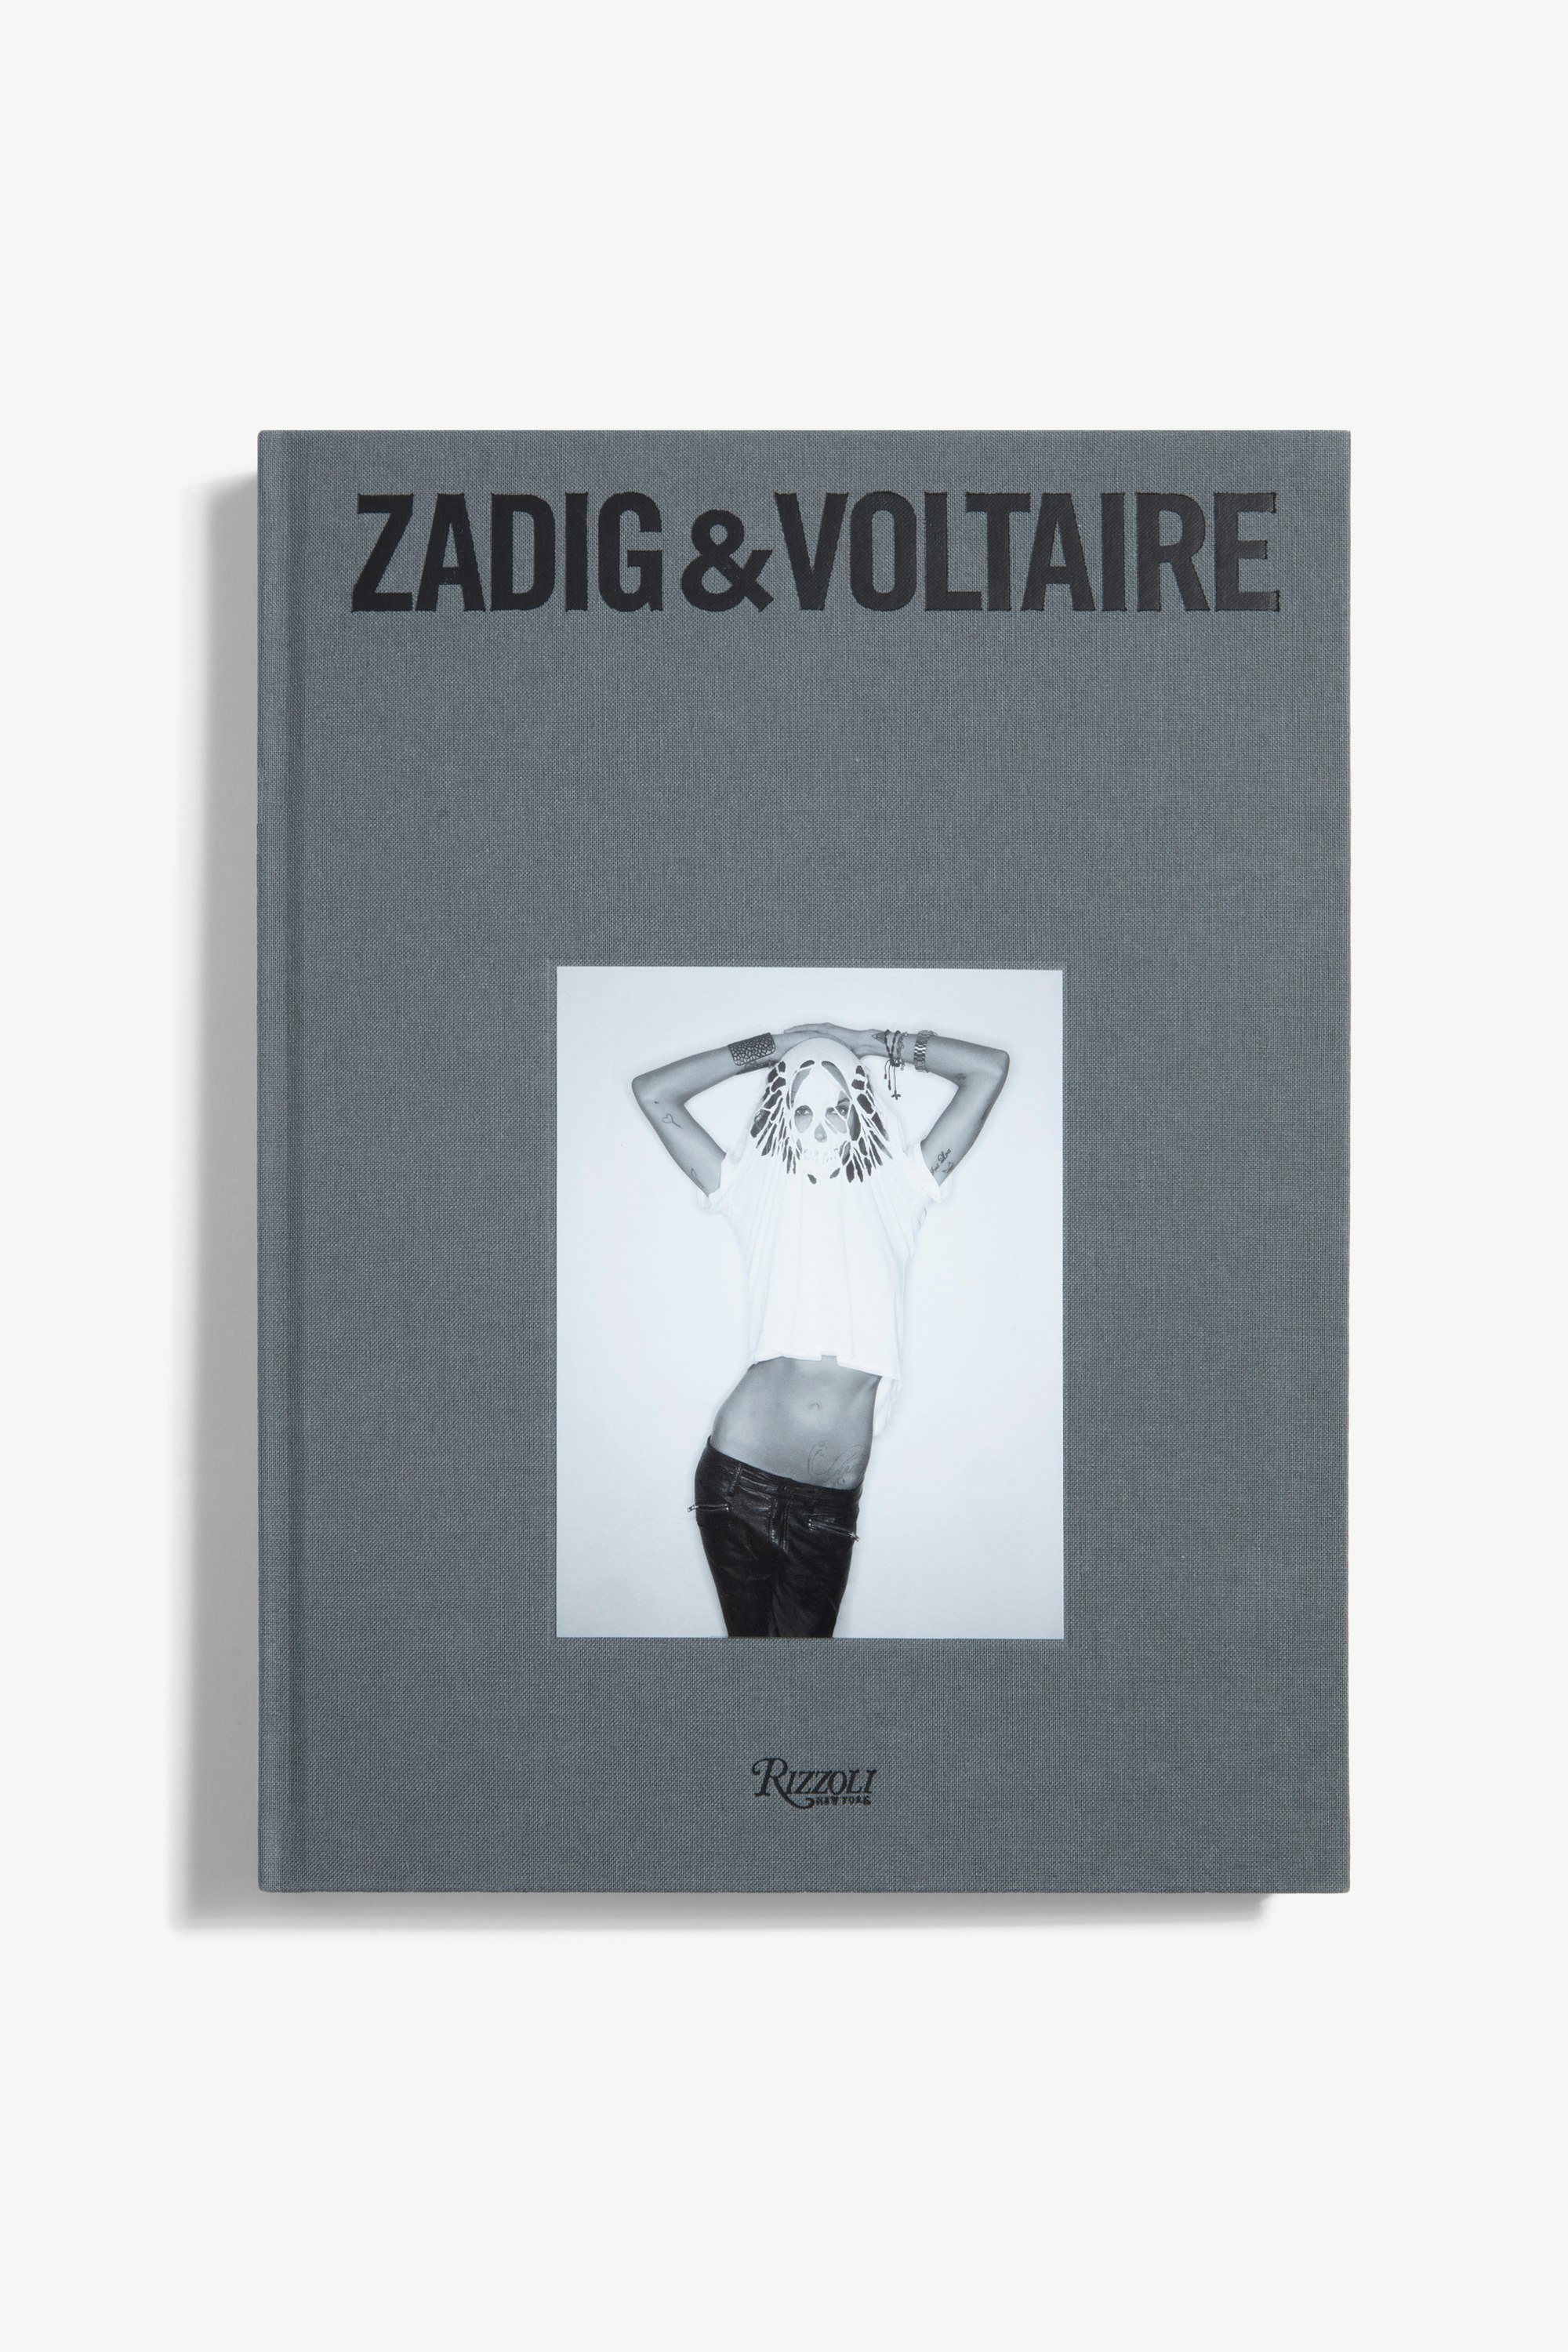 Libro «Zadig&Voltaire: Established 1997 in Paris» - Versión en Francé" - La primera monografía sobre la marca Zadig&Voltaire, publicada con motivo de su 25.º aniversario (versión en francés).